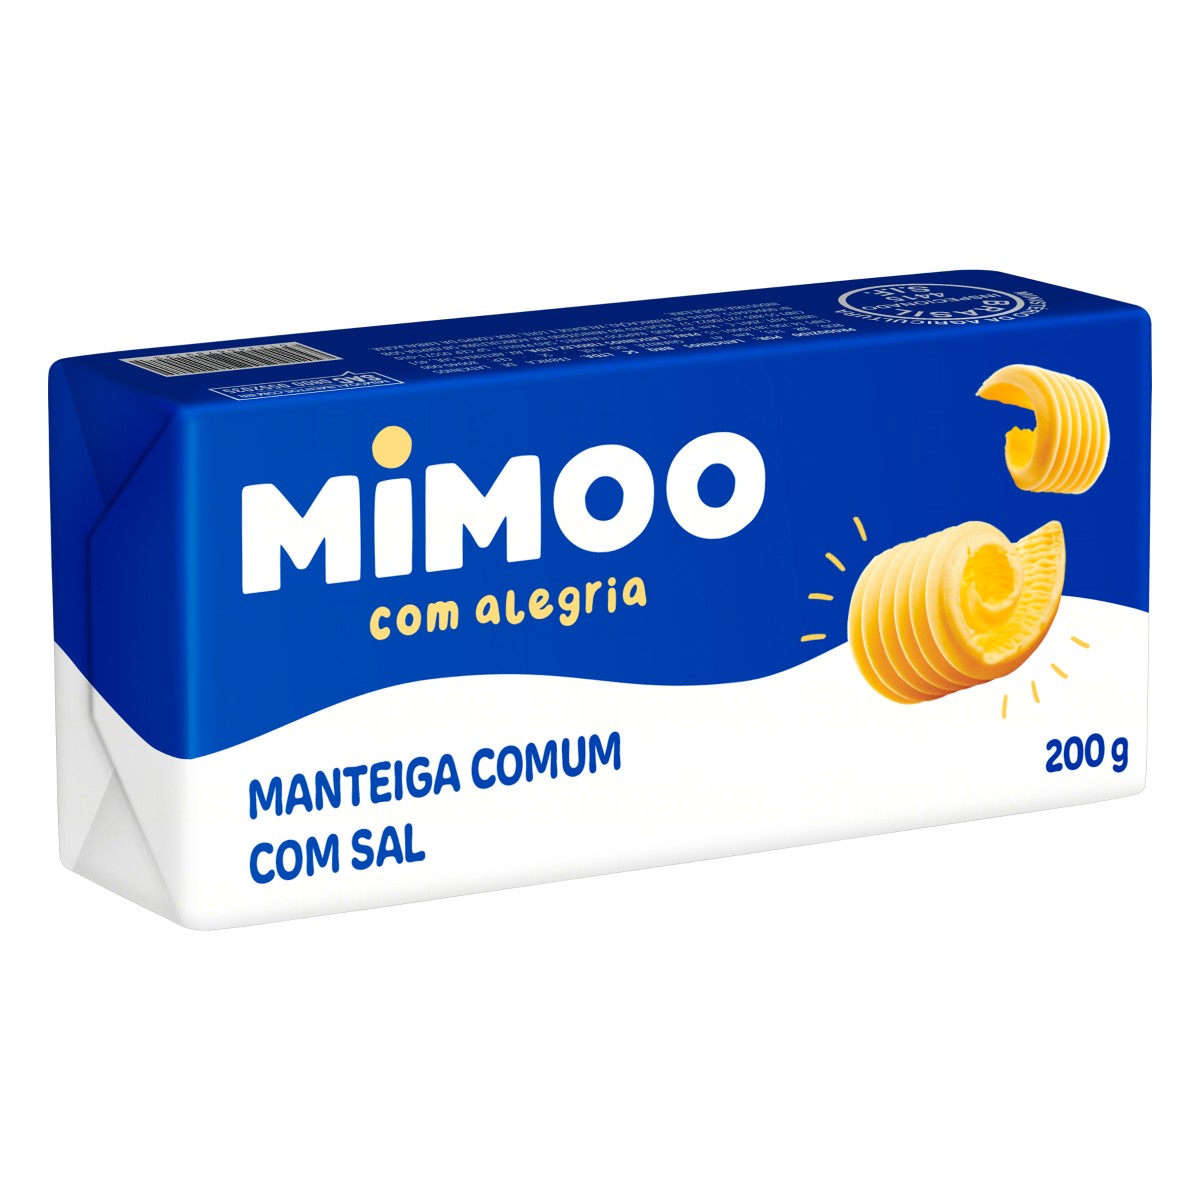 7896030520877 - MANTEIGA COMUM COM SAL MIMOO 200G